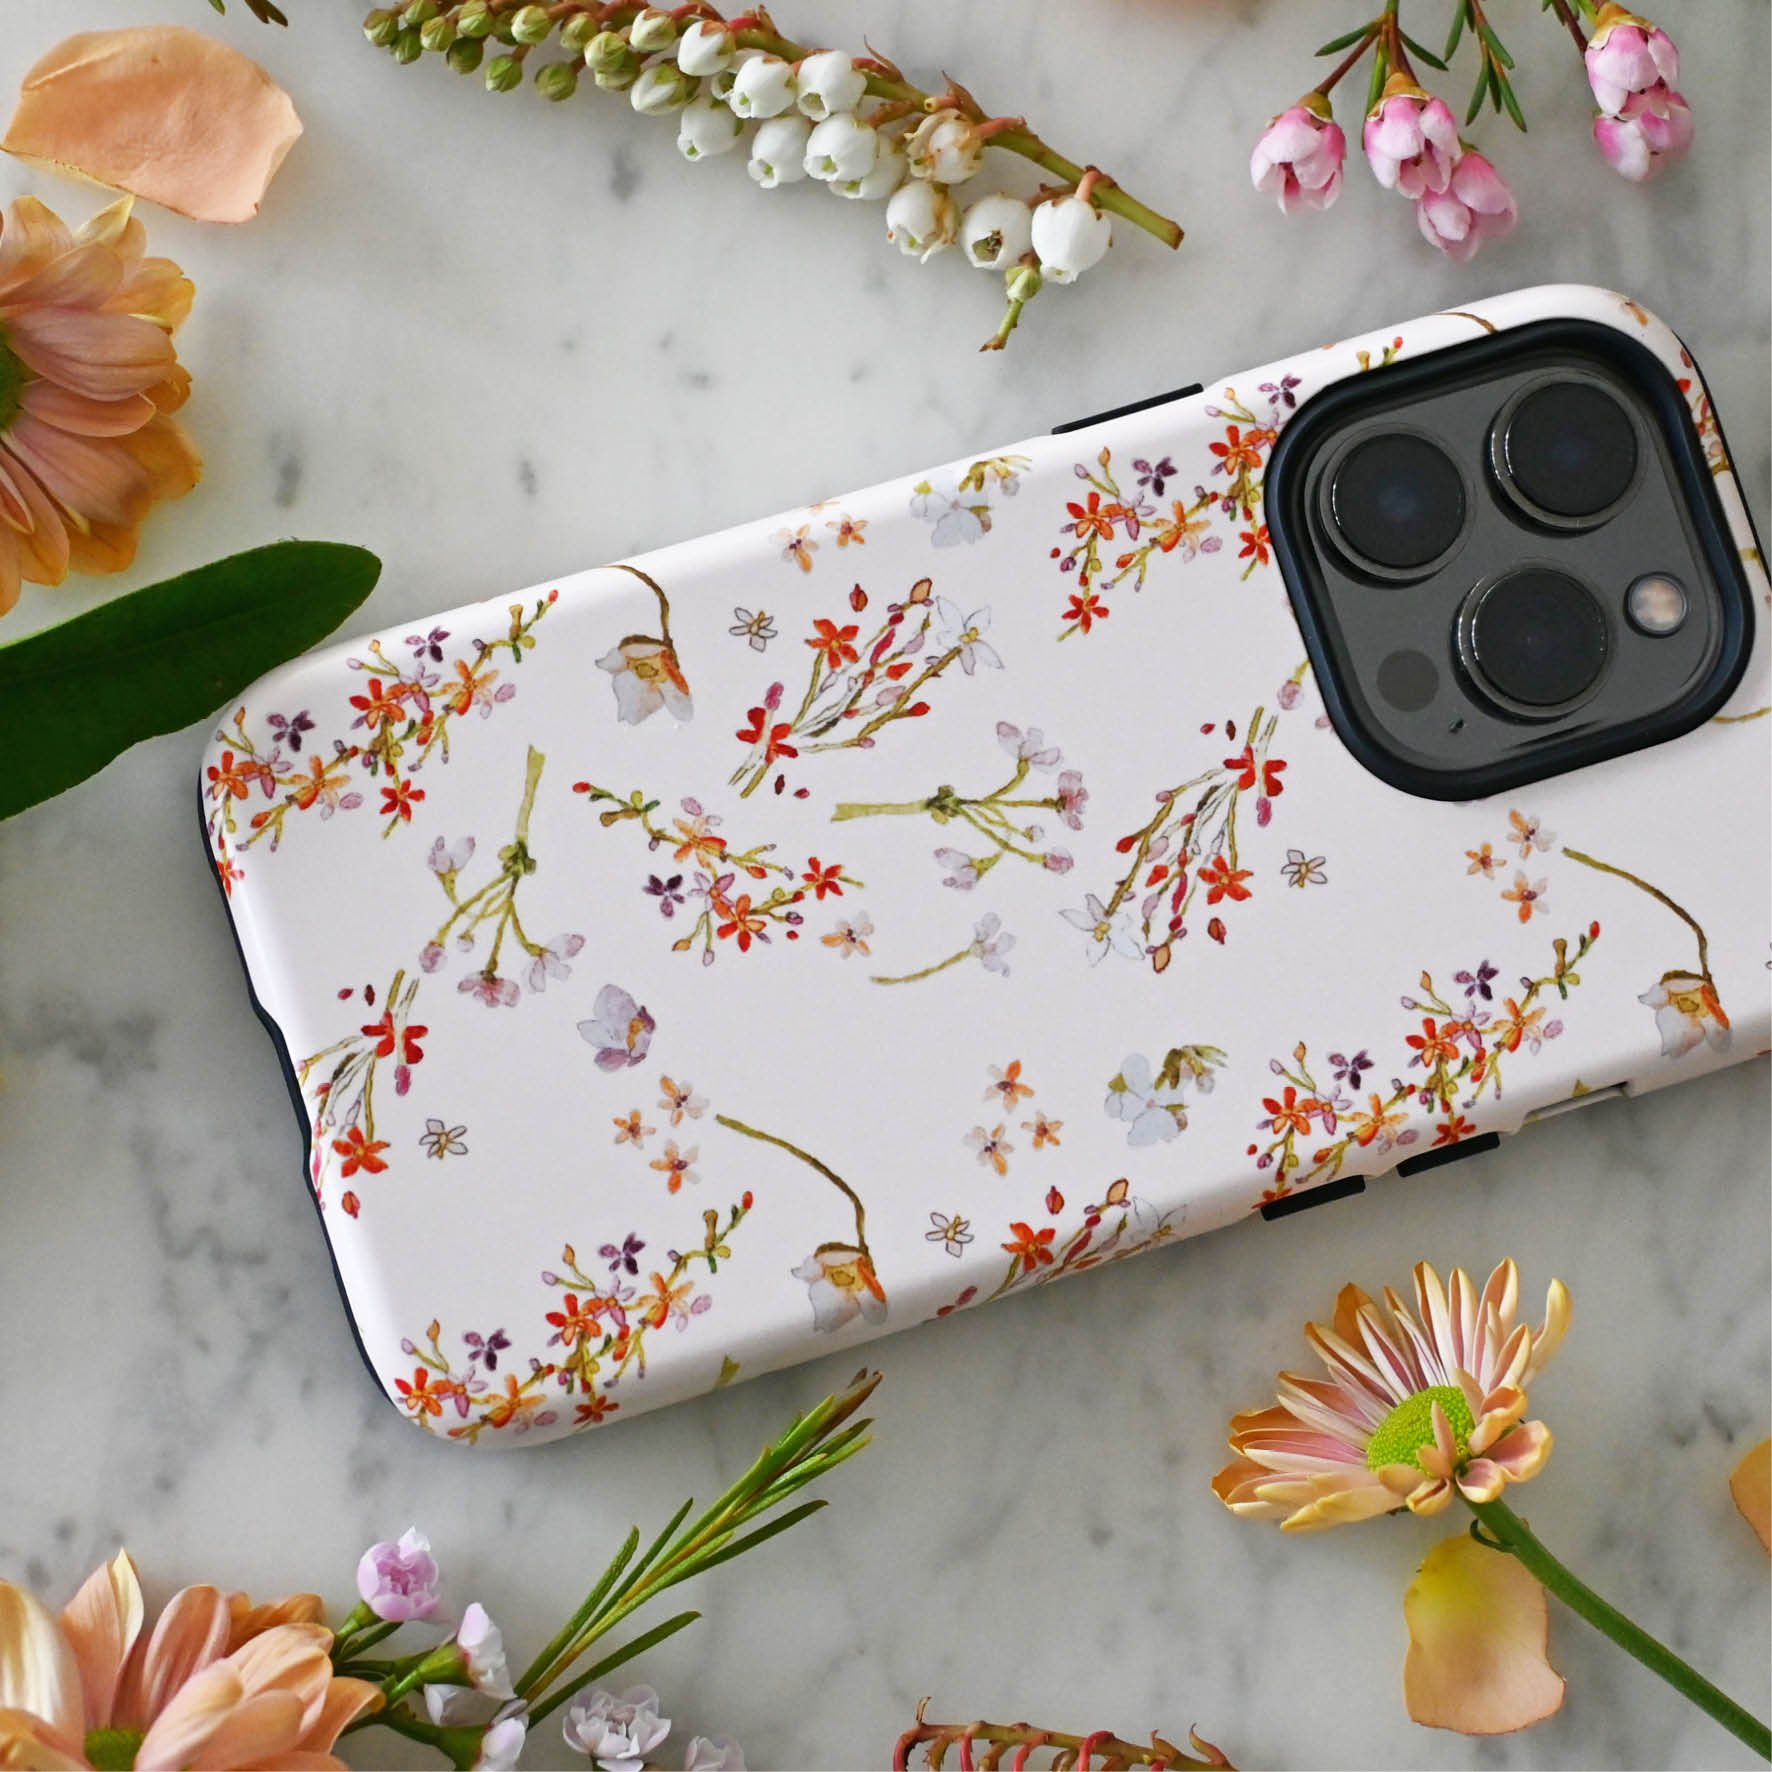 eleanor-vintage-floral-phone-case.jpg